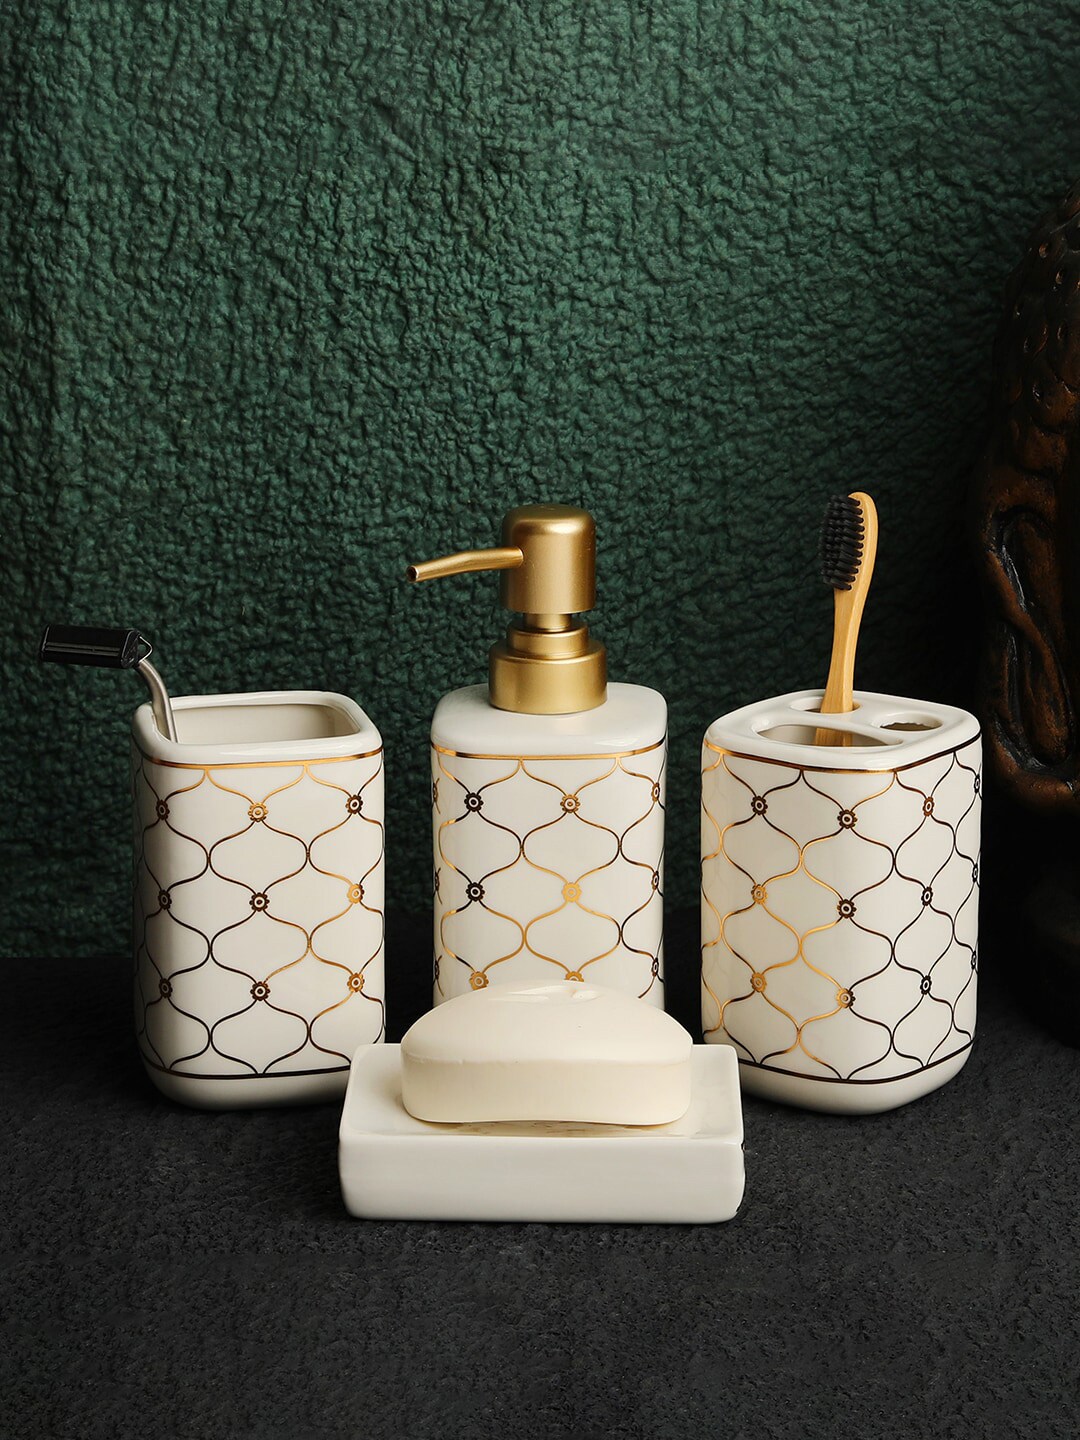 ROMEE White &Gold-Toned Ceramic Bathroom Accessories Set Price in India